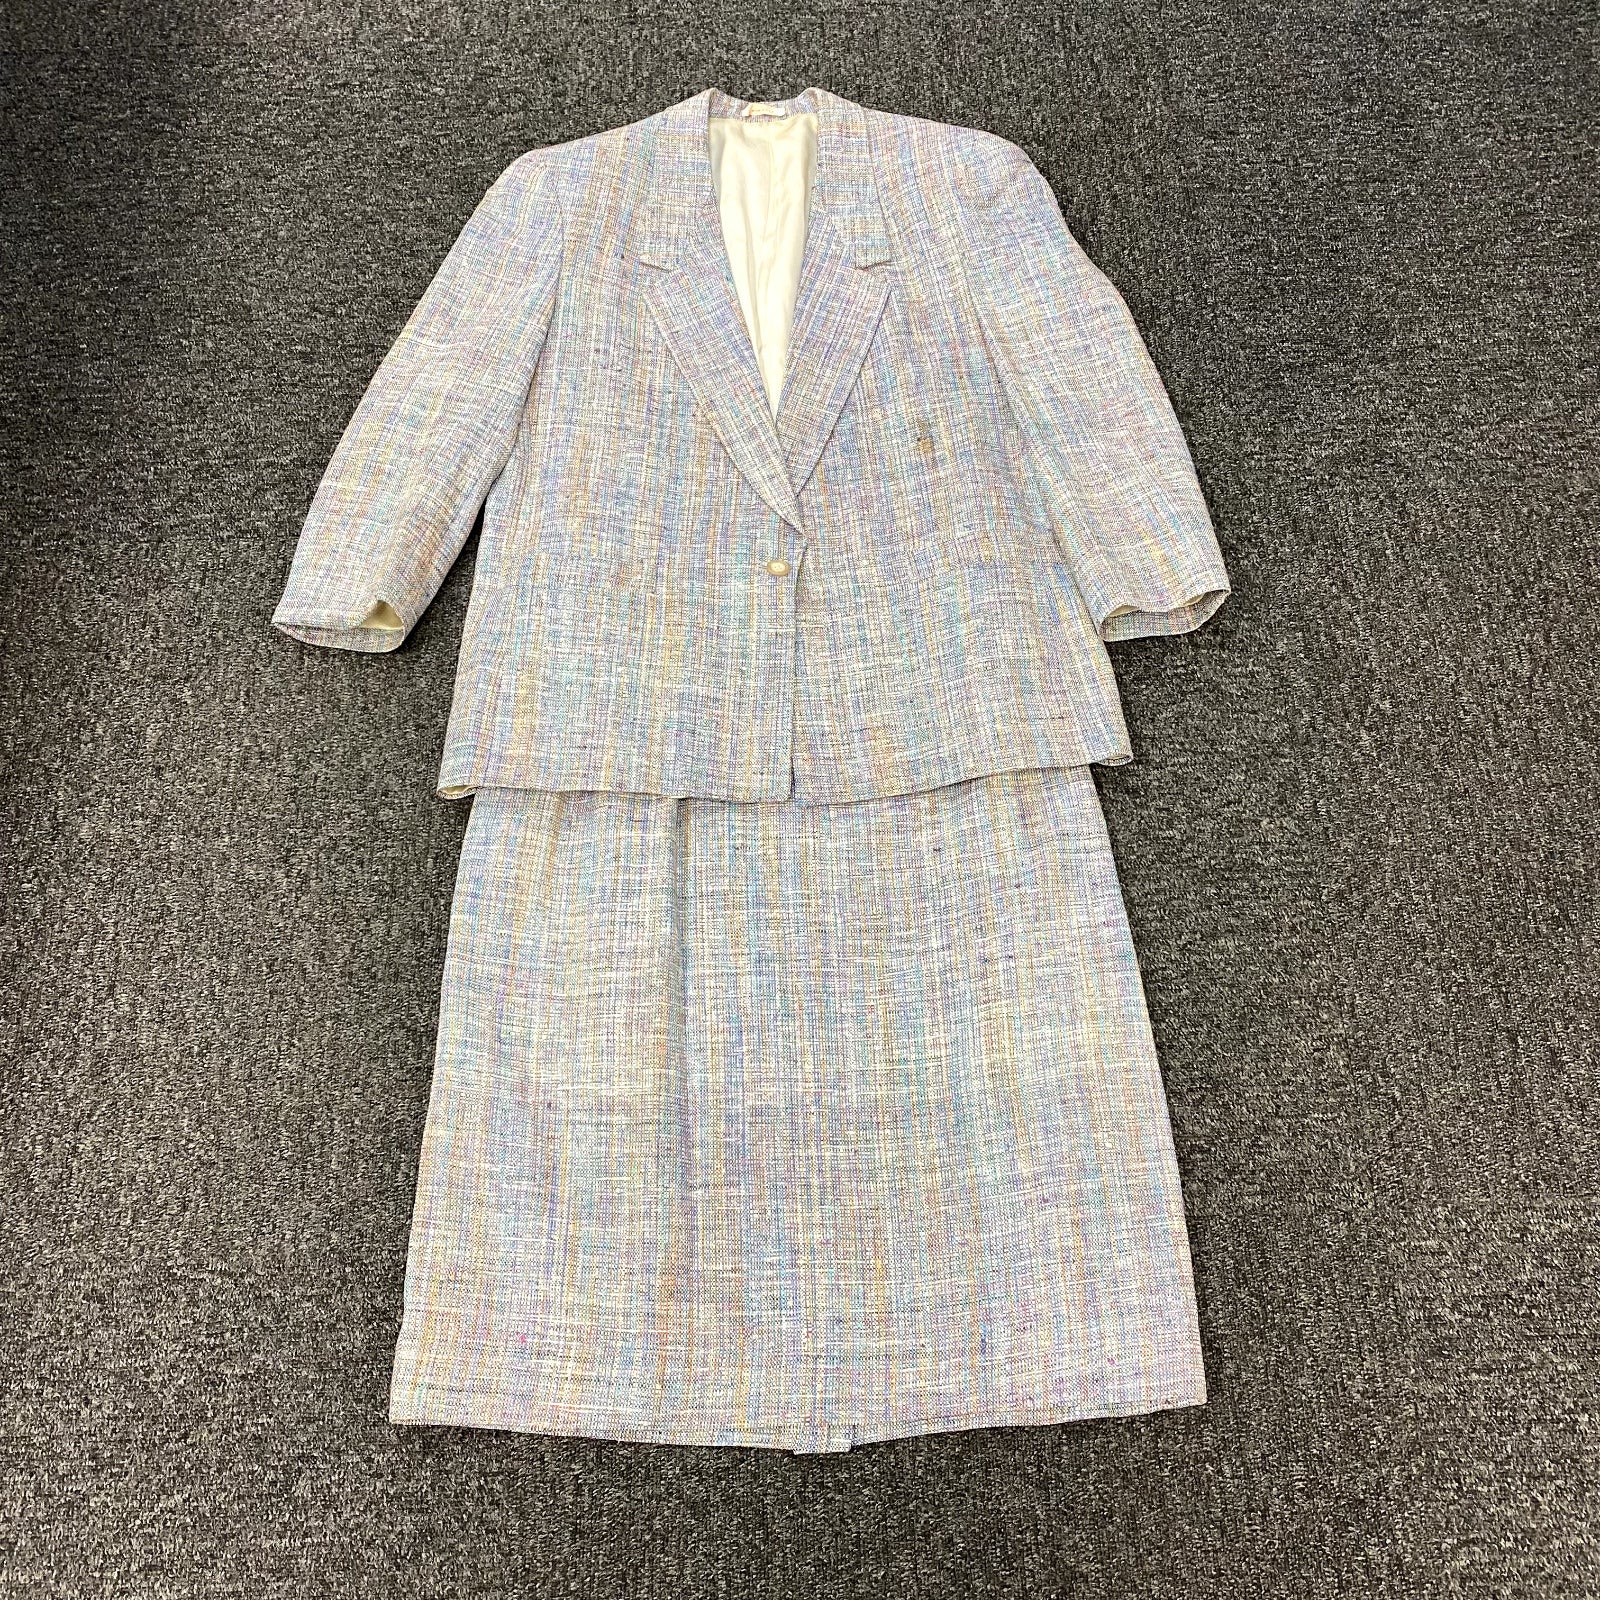 Vintage Robt Foxwood Multicolor Plaid Blazer & Skirt Suit Set Women Size 14 USA